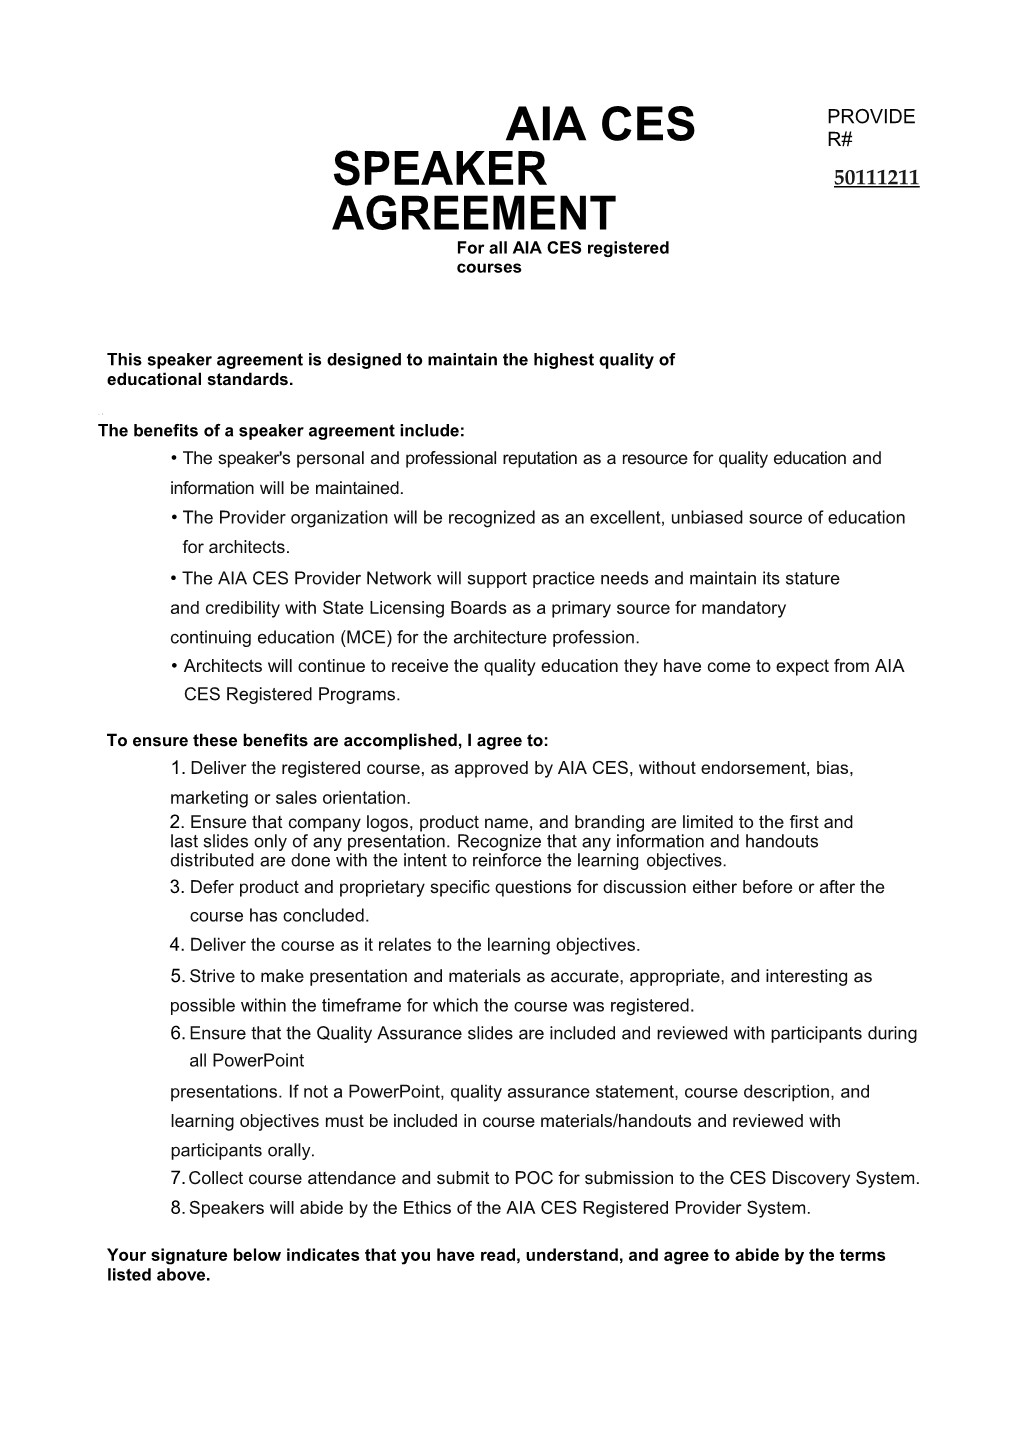 Presenter Agreement Form.Psd